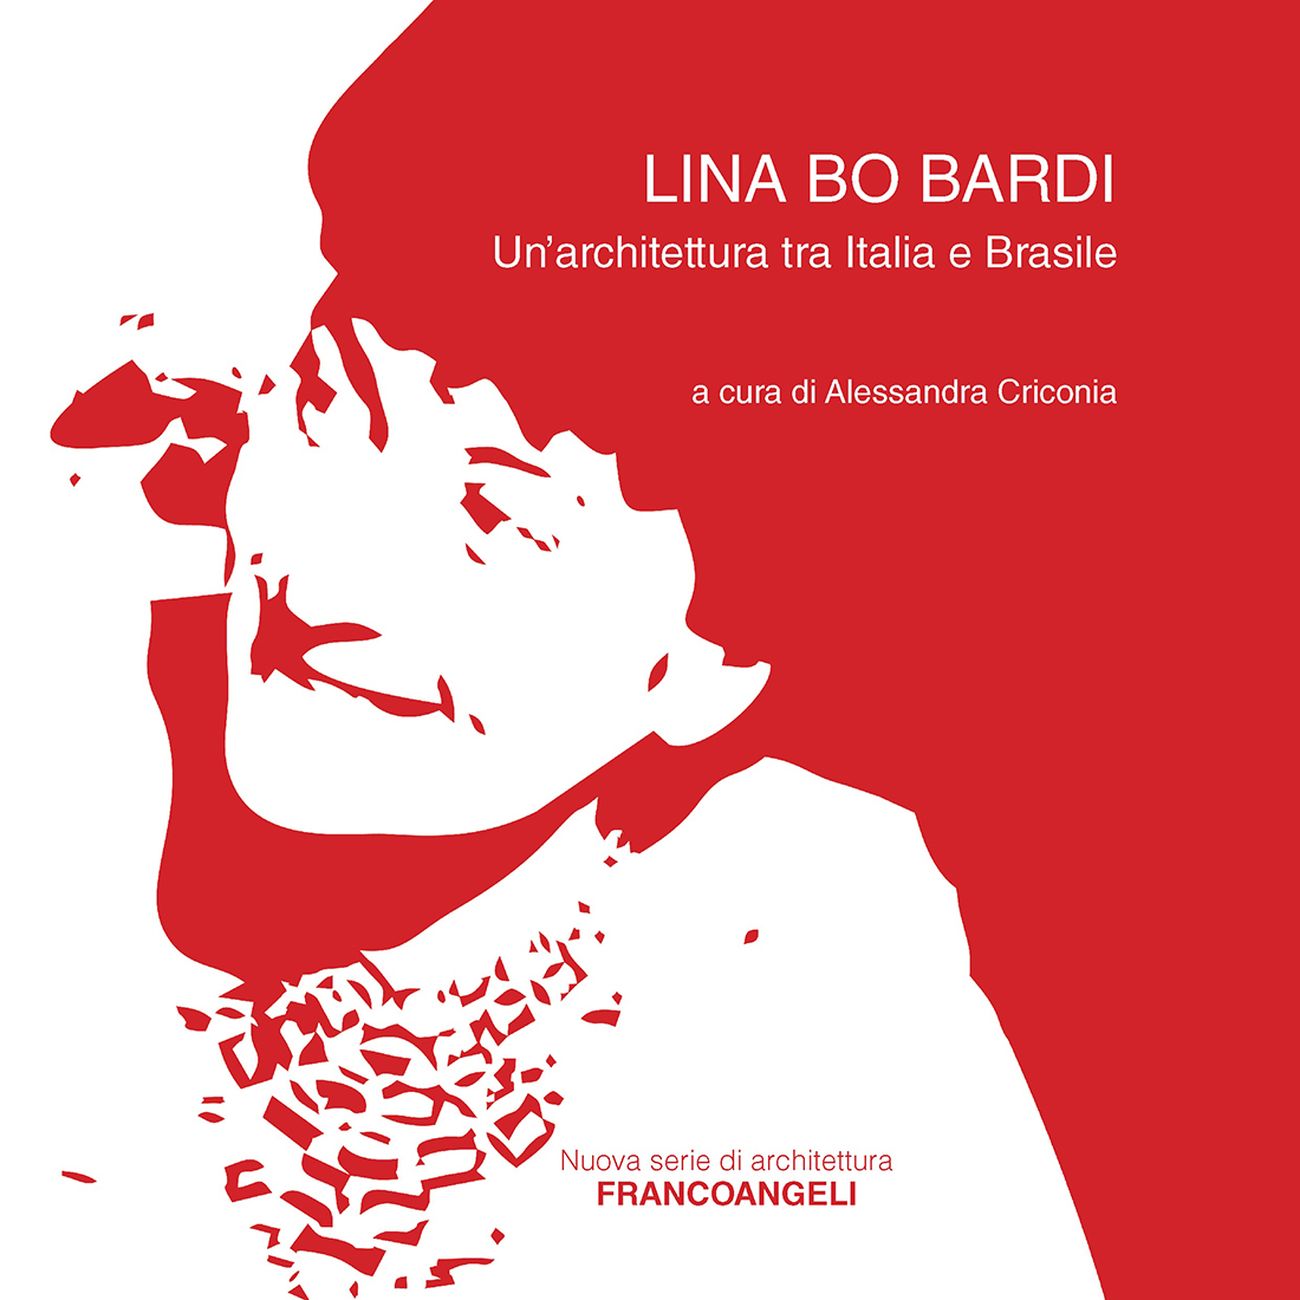 Alessandra Criconia (a cura di) ‒ Lina Bo Bardi. Un'architettura tra Italia e Brasile (Franco Angeli Editore, Milano 2017)